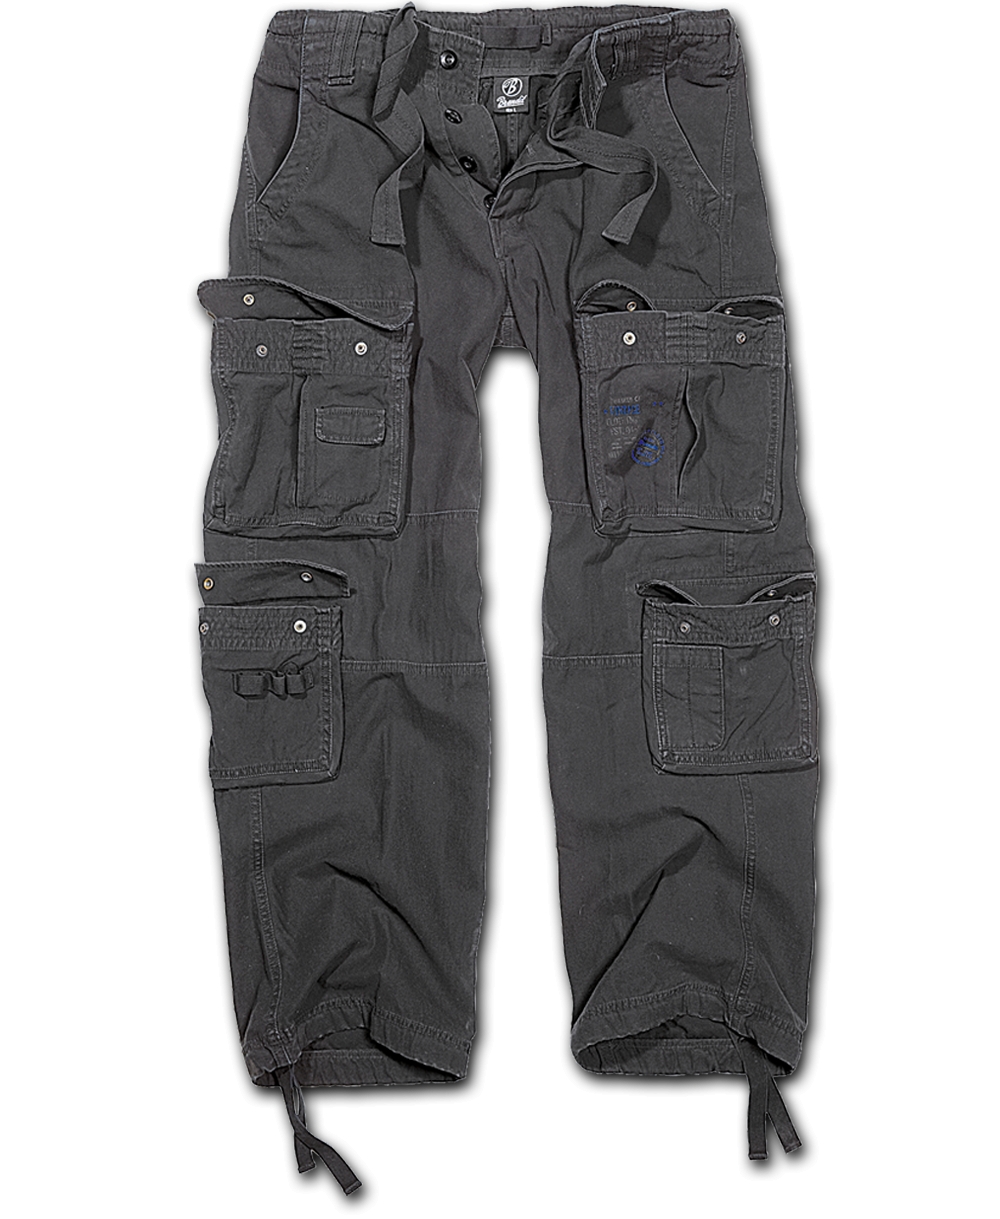 Kalhoty Brandit Pure Vintage - černé, 6XL